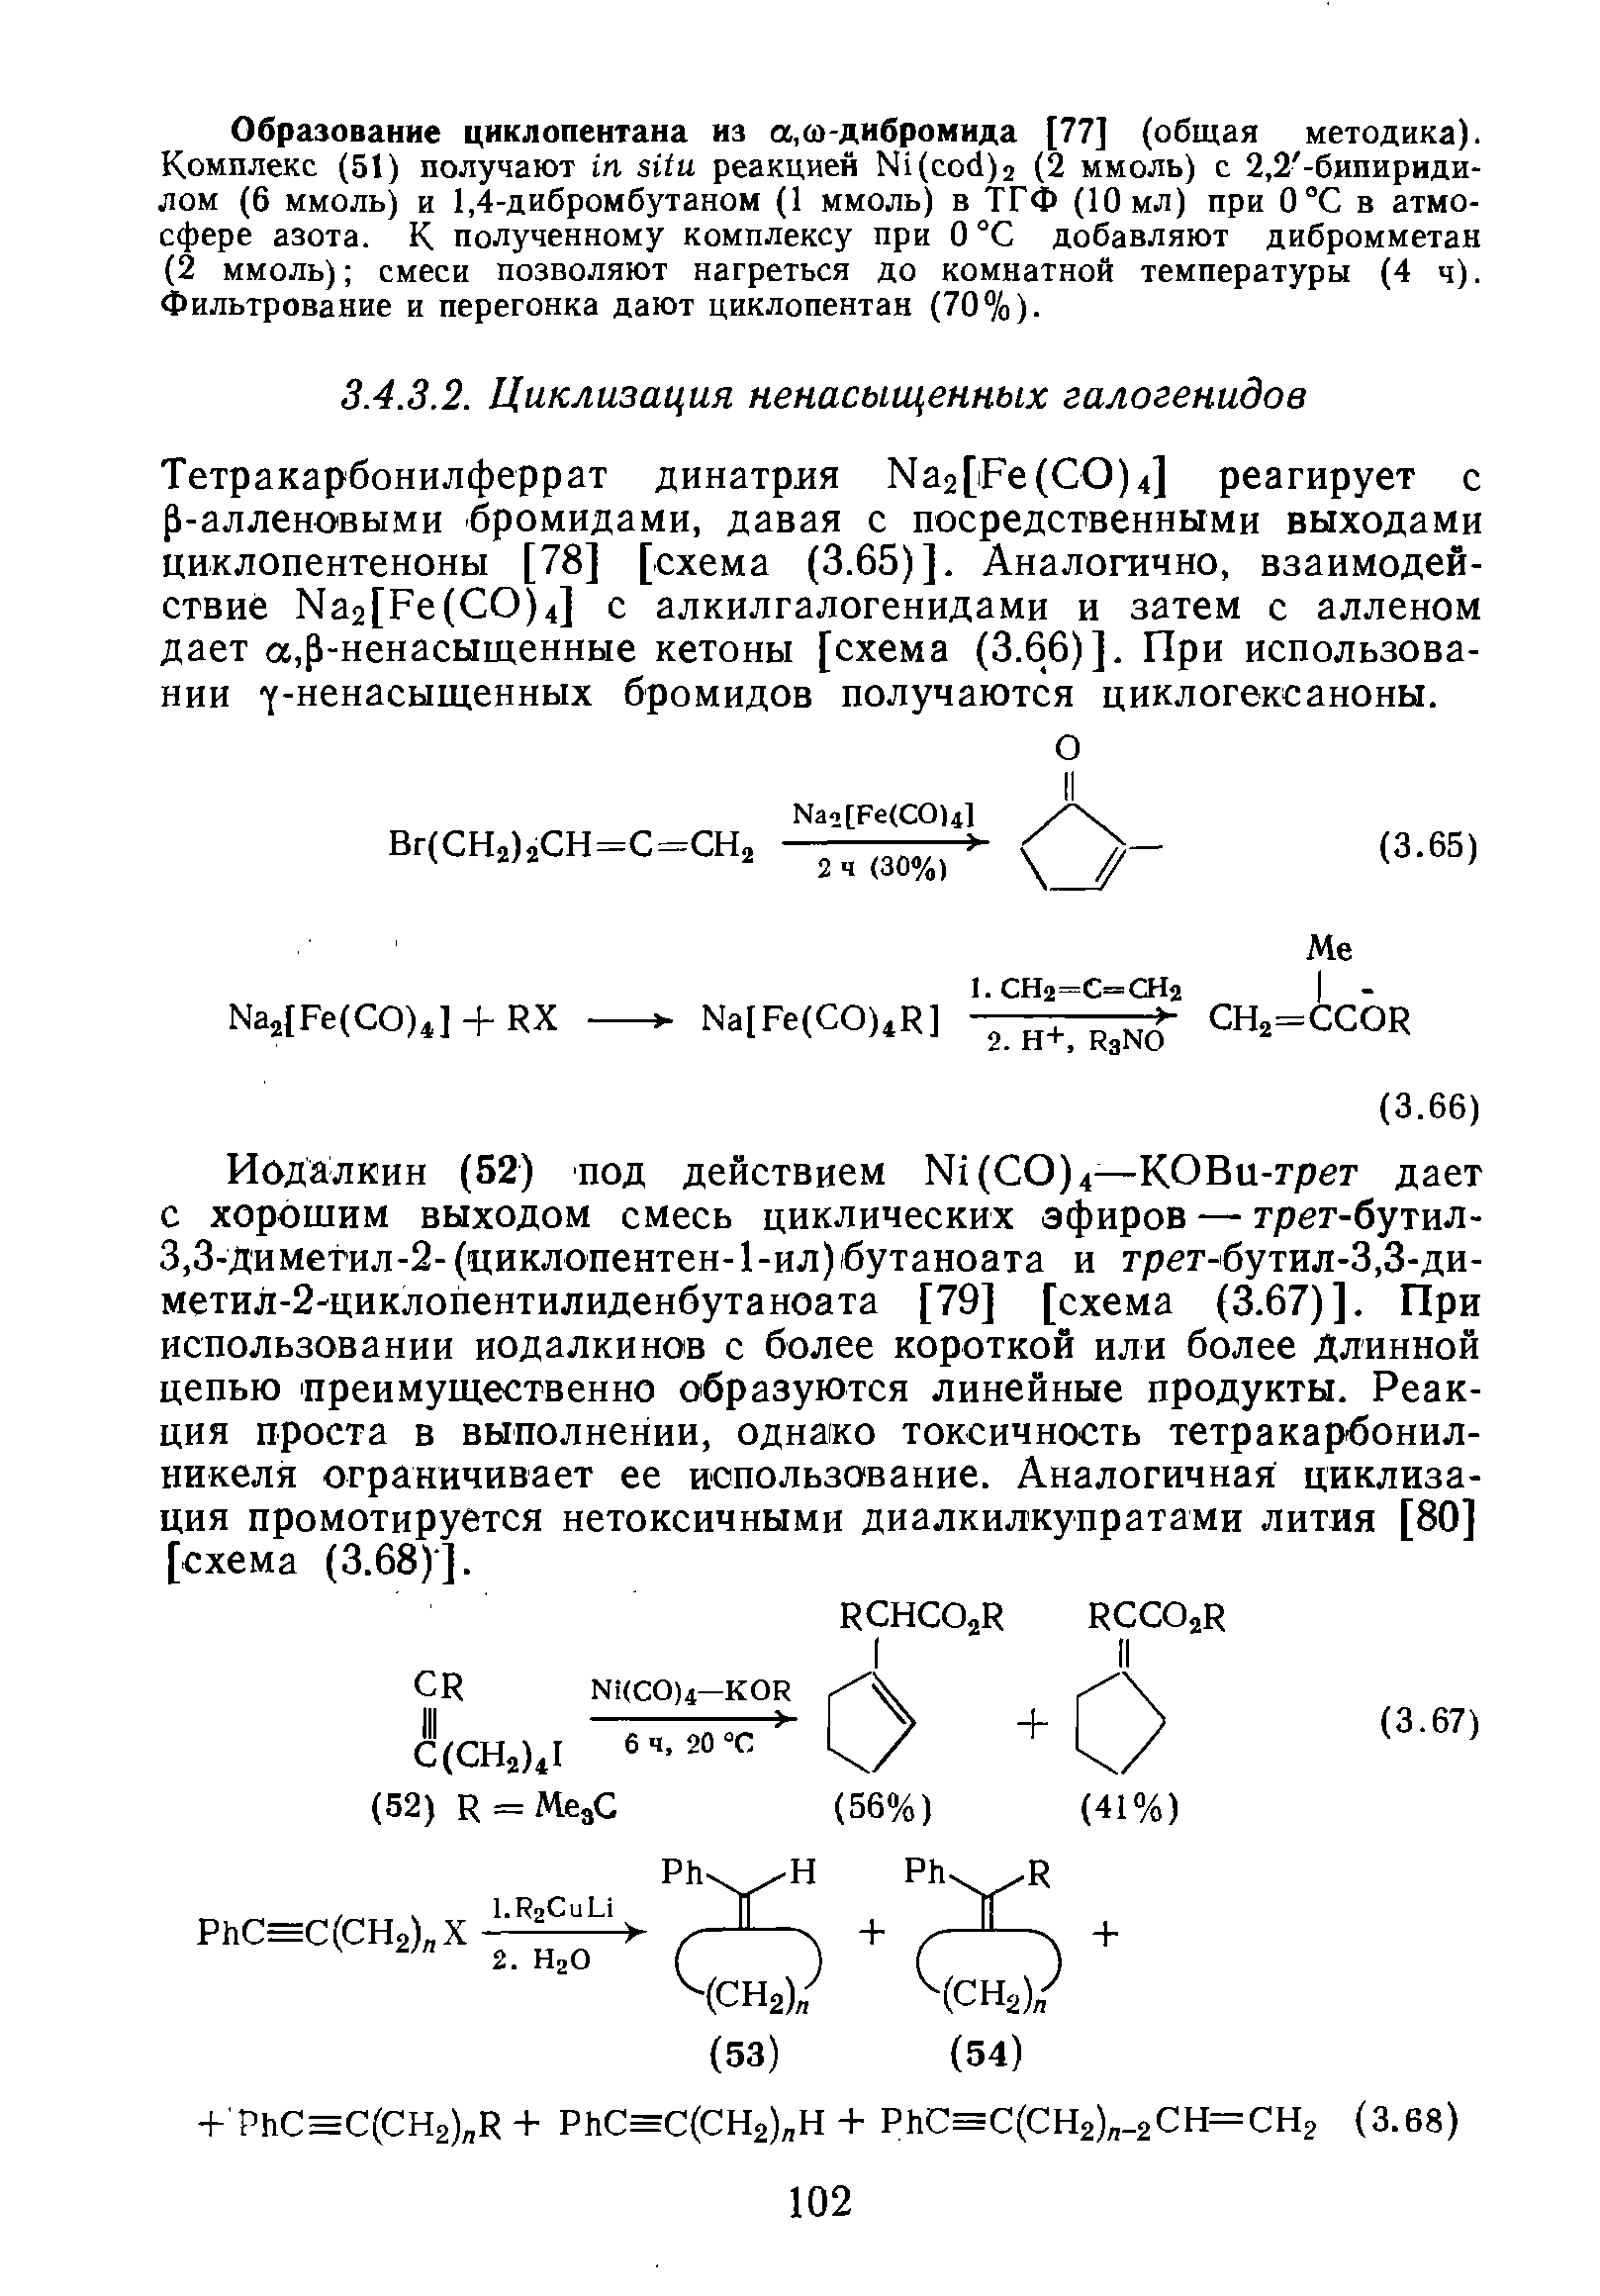 Тетракарбонилферрат динатрля Ма2[Ре(СО)4] реагирует с р-алленовыми бромидами, давая с посредственными выходами циклопентеноны [78] [схема (3.65)]. Аналогично, взаимодействие Ма2[Ре(СО)4] с алкилгалогенидами и затем с алленом дает а,р-ненасыщенные кетоны [схема (3.66)]. При использовании у-ненасыщенных бромидов получаются циклогексаноны.